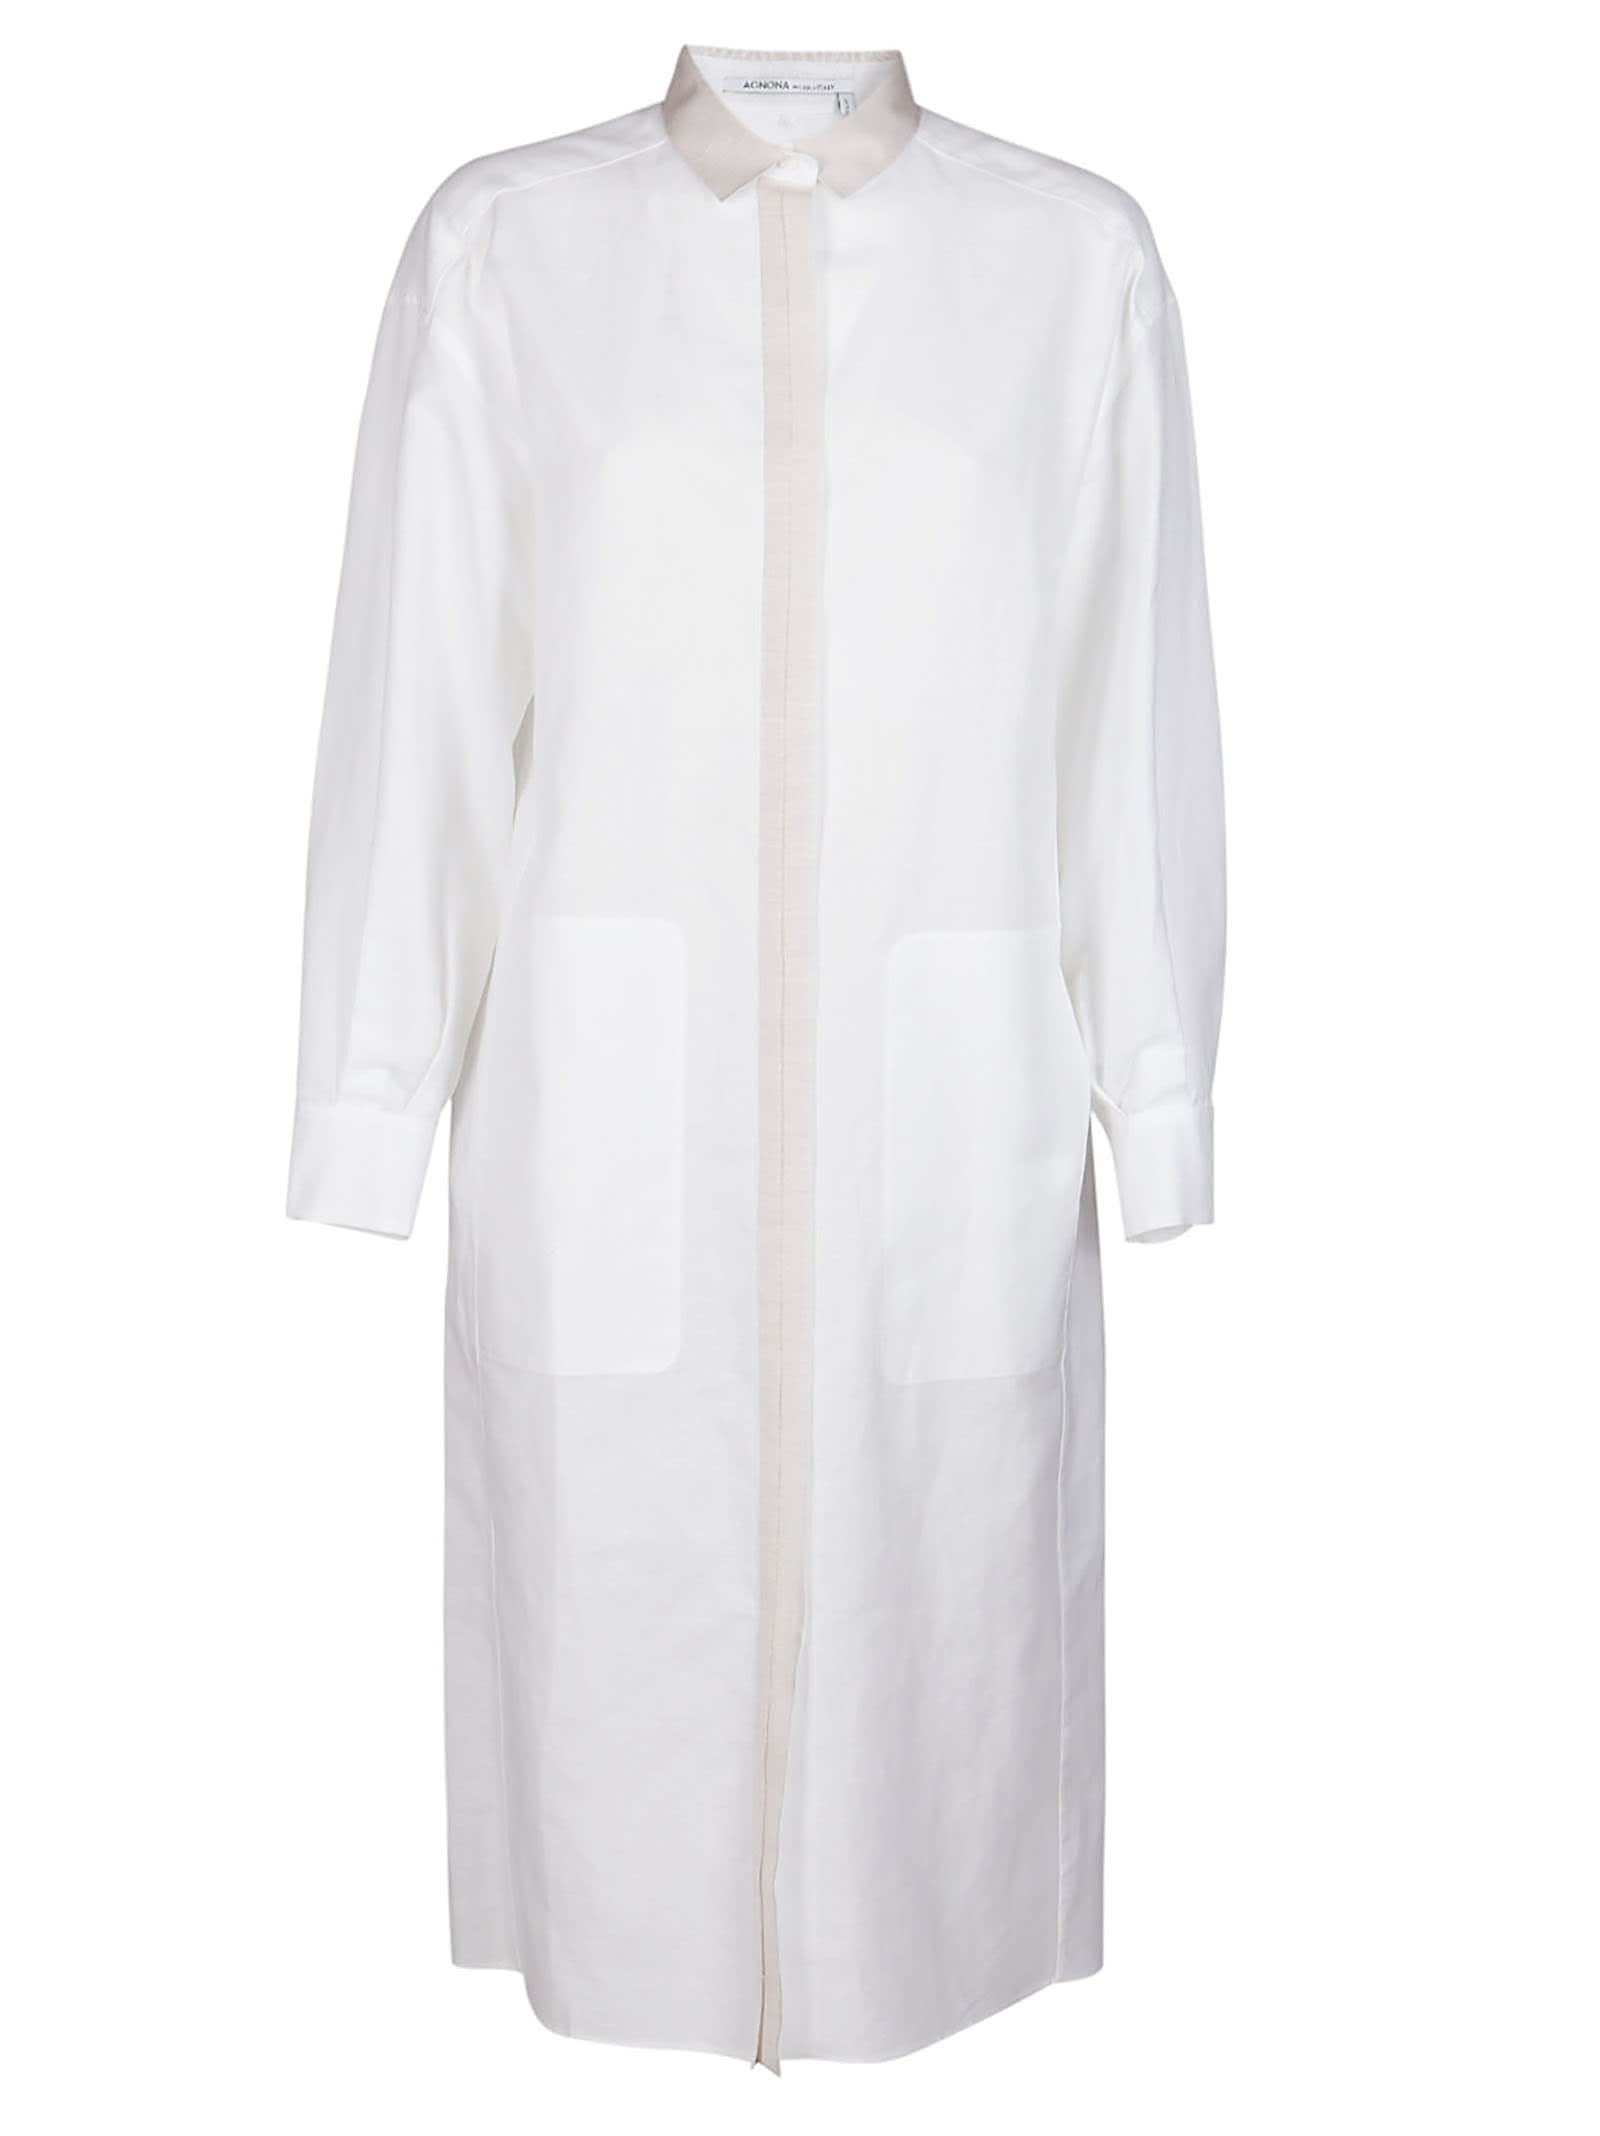 AGNONA WHITE COTTON-LINEN BLEND SHIRT DRESS,TR0102YU2012N00